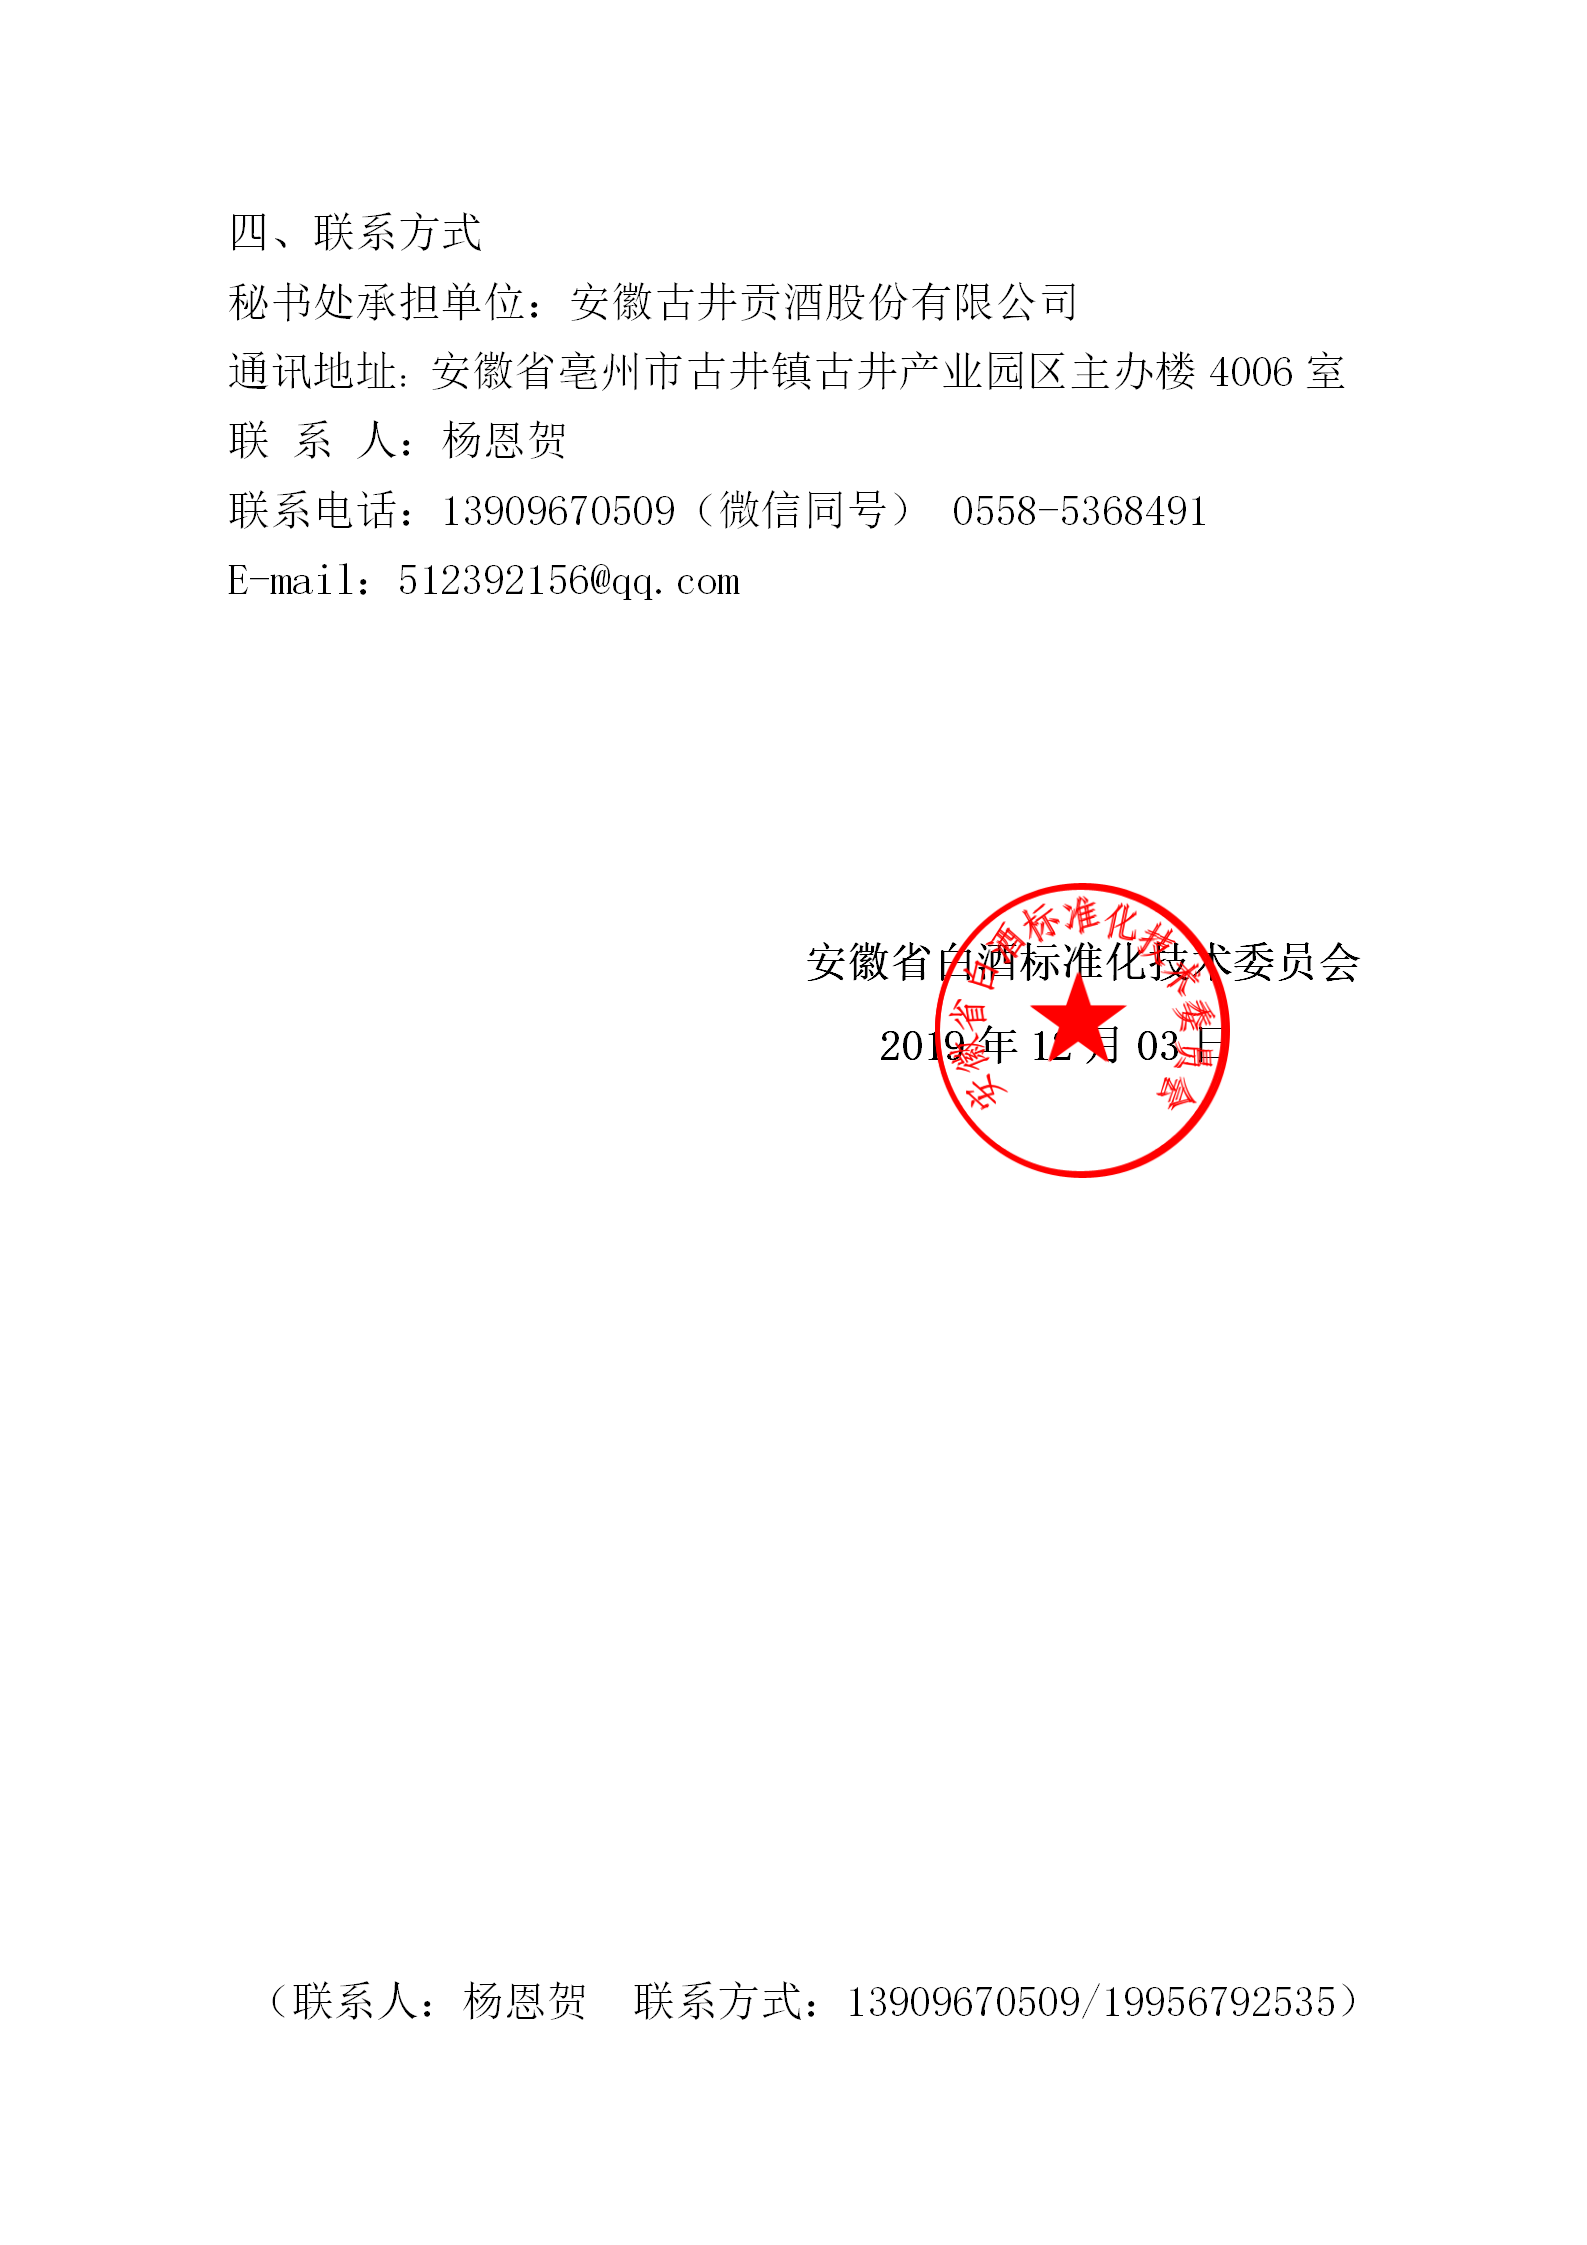 01 关于安徽省白酒标准化技术委员会换届及征集委员的通知 2019年4号_03